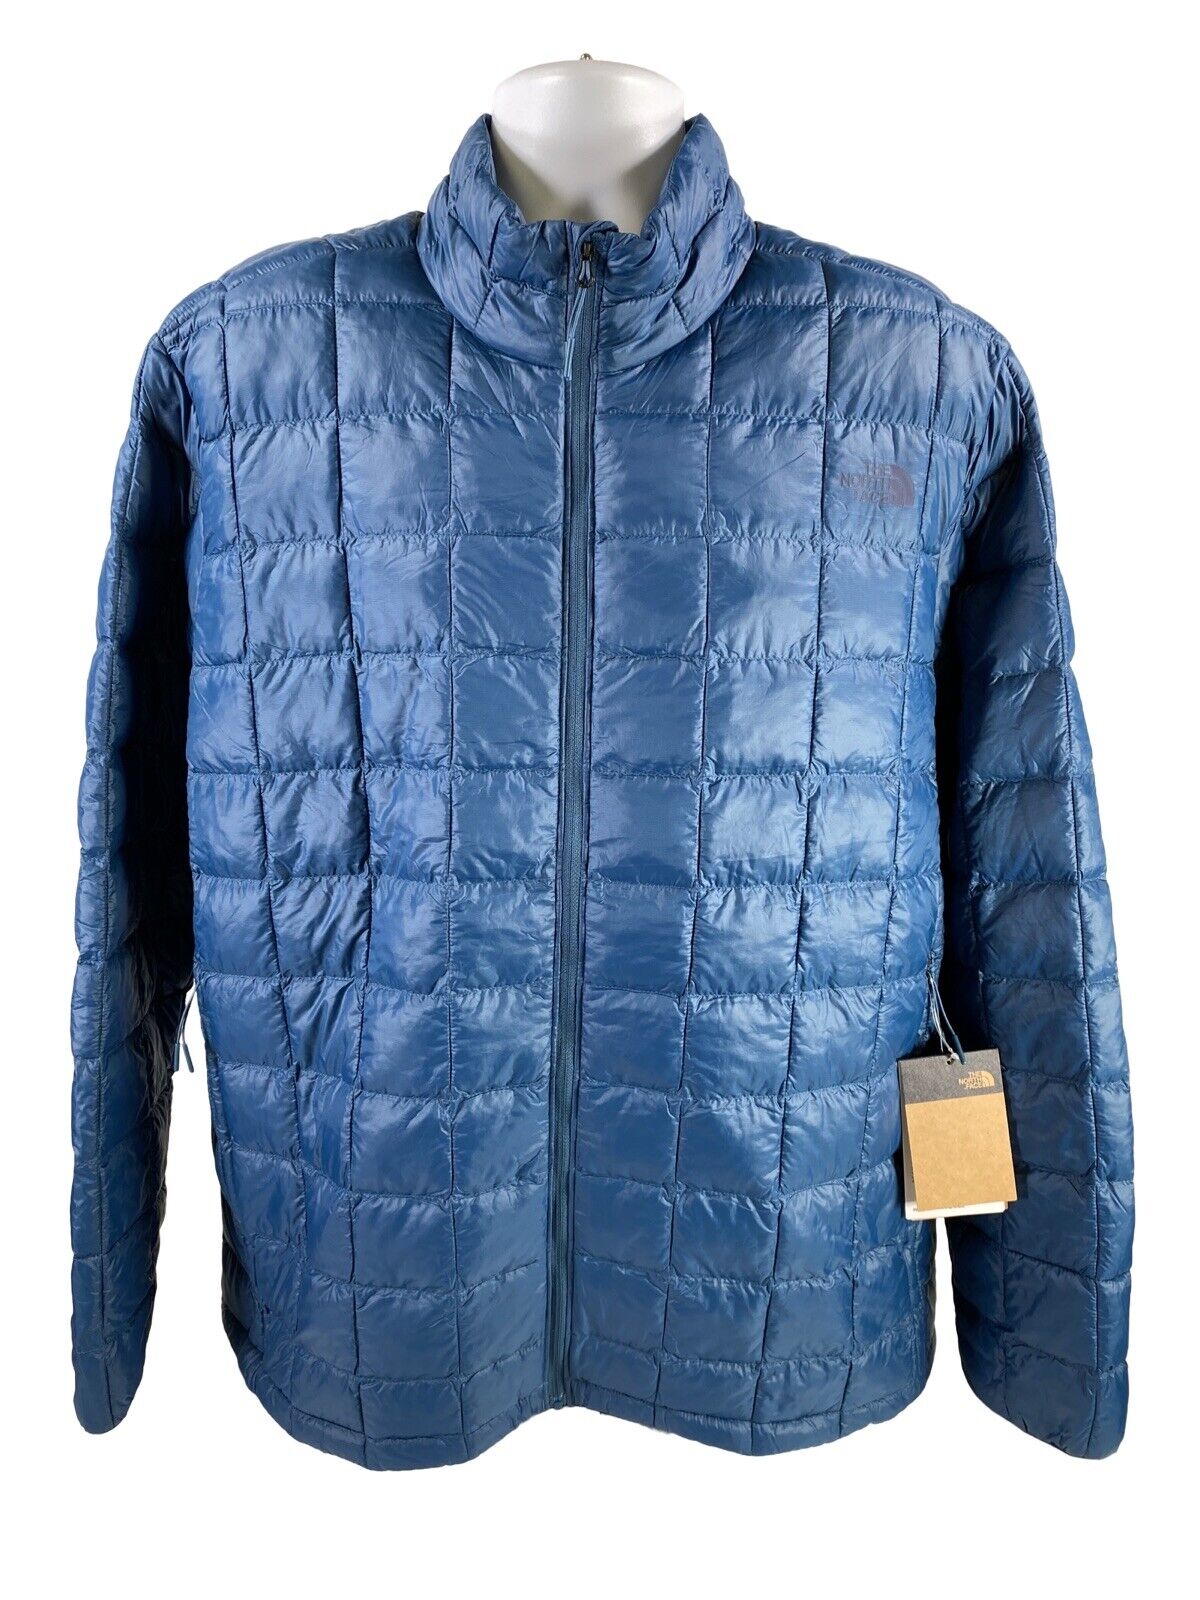 NUEVA chaqueta ecológica Thermoball azul Monterey de The North Face para hombre - XXL